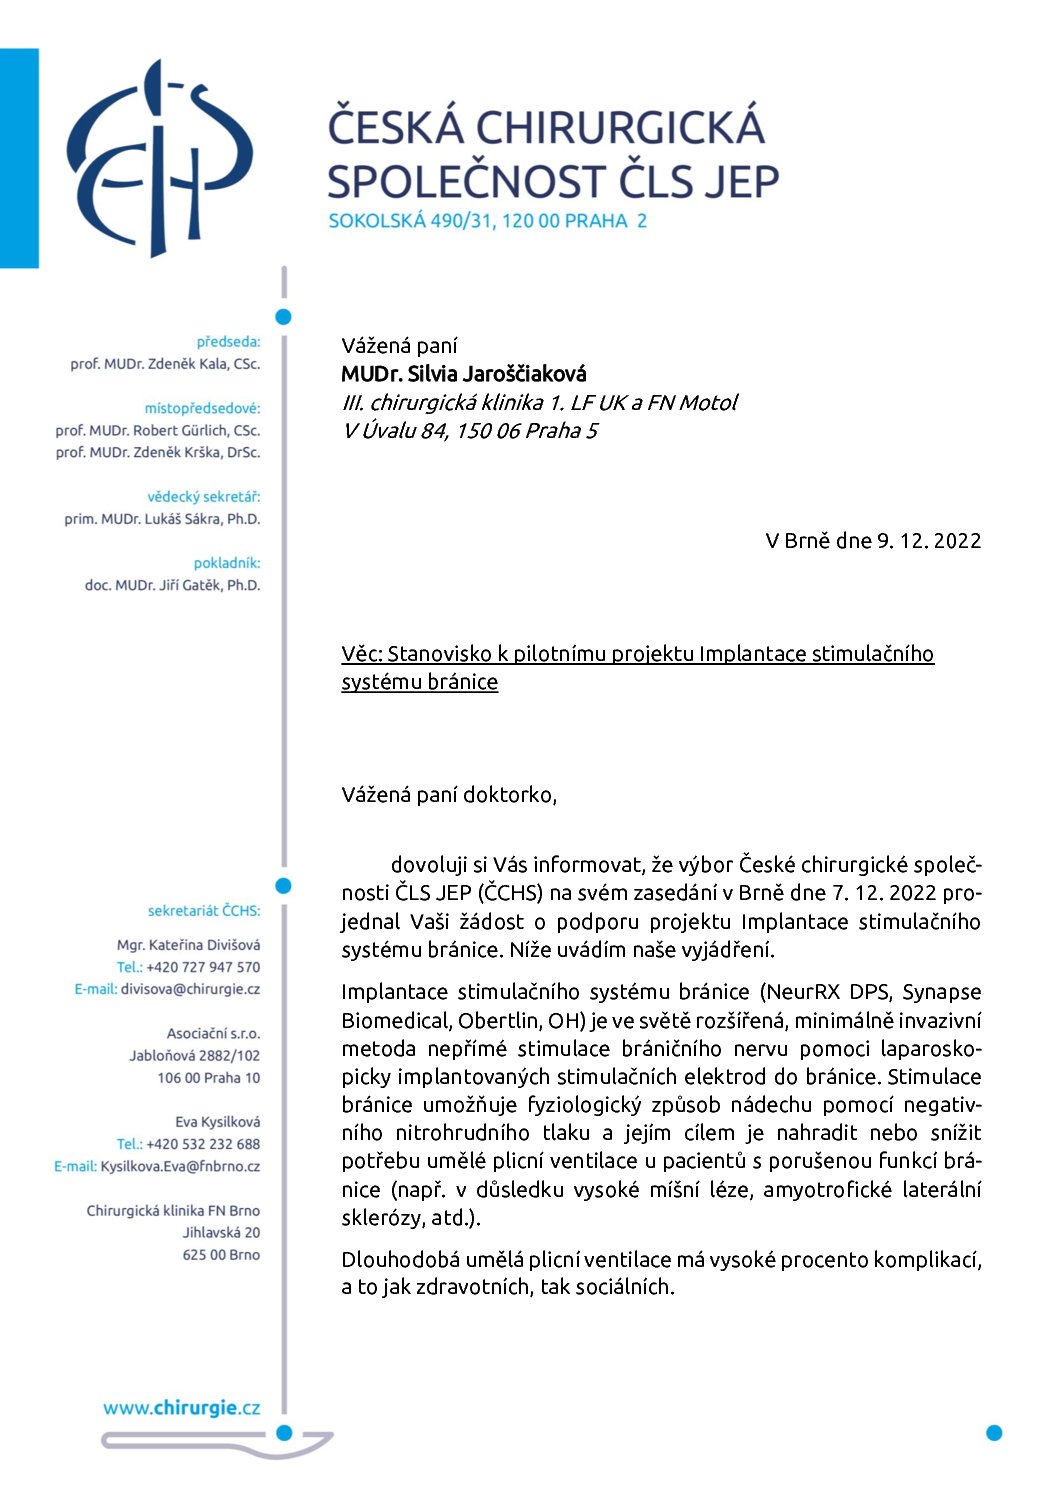 Stanovisko výboru ČCHS ČLS JEP k Implantaci stimulačního systému bránice (9. 12. 2022)